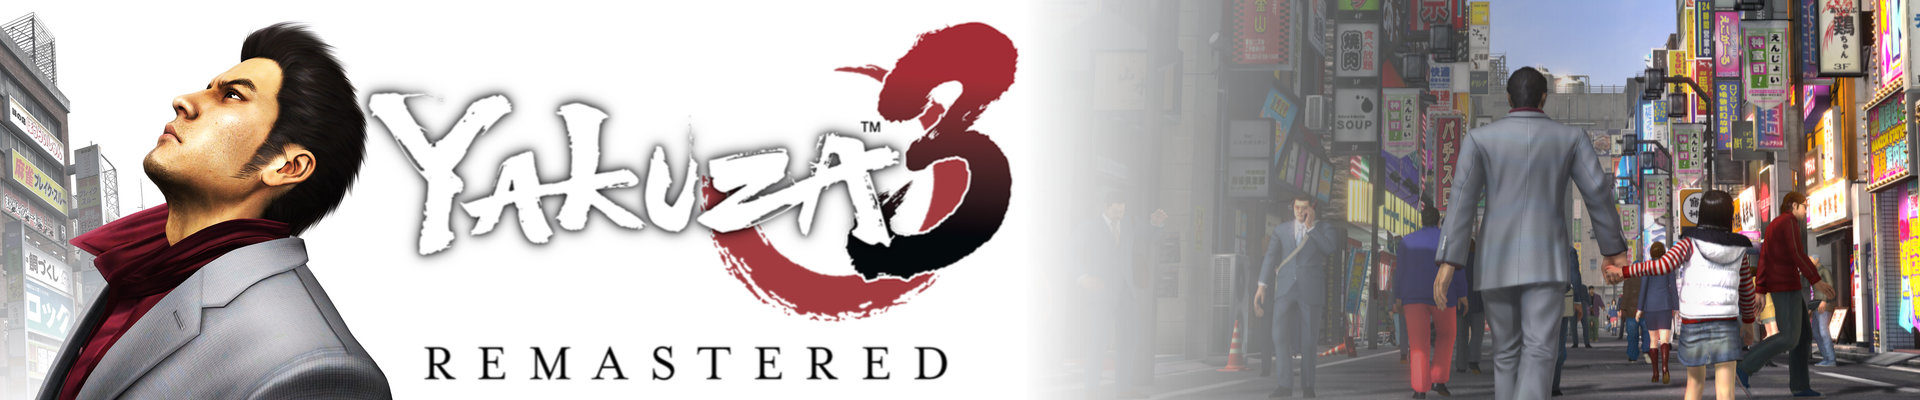 Thoughts on: Yakuza 3 Remastered